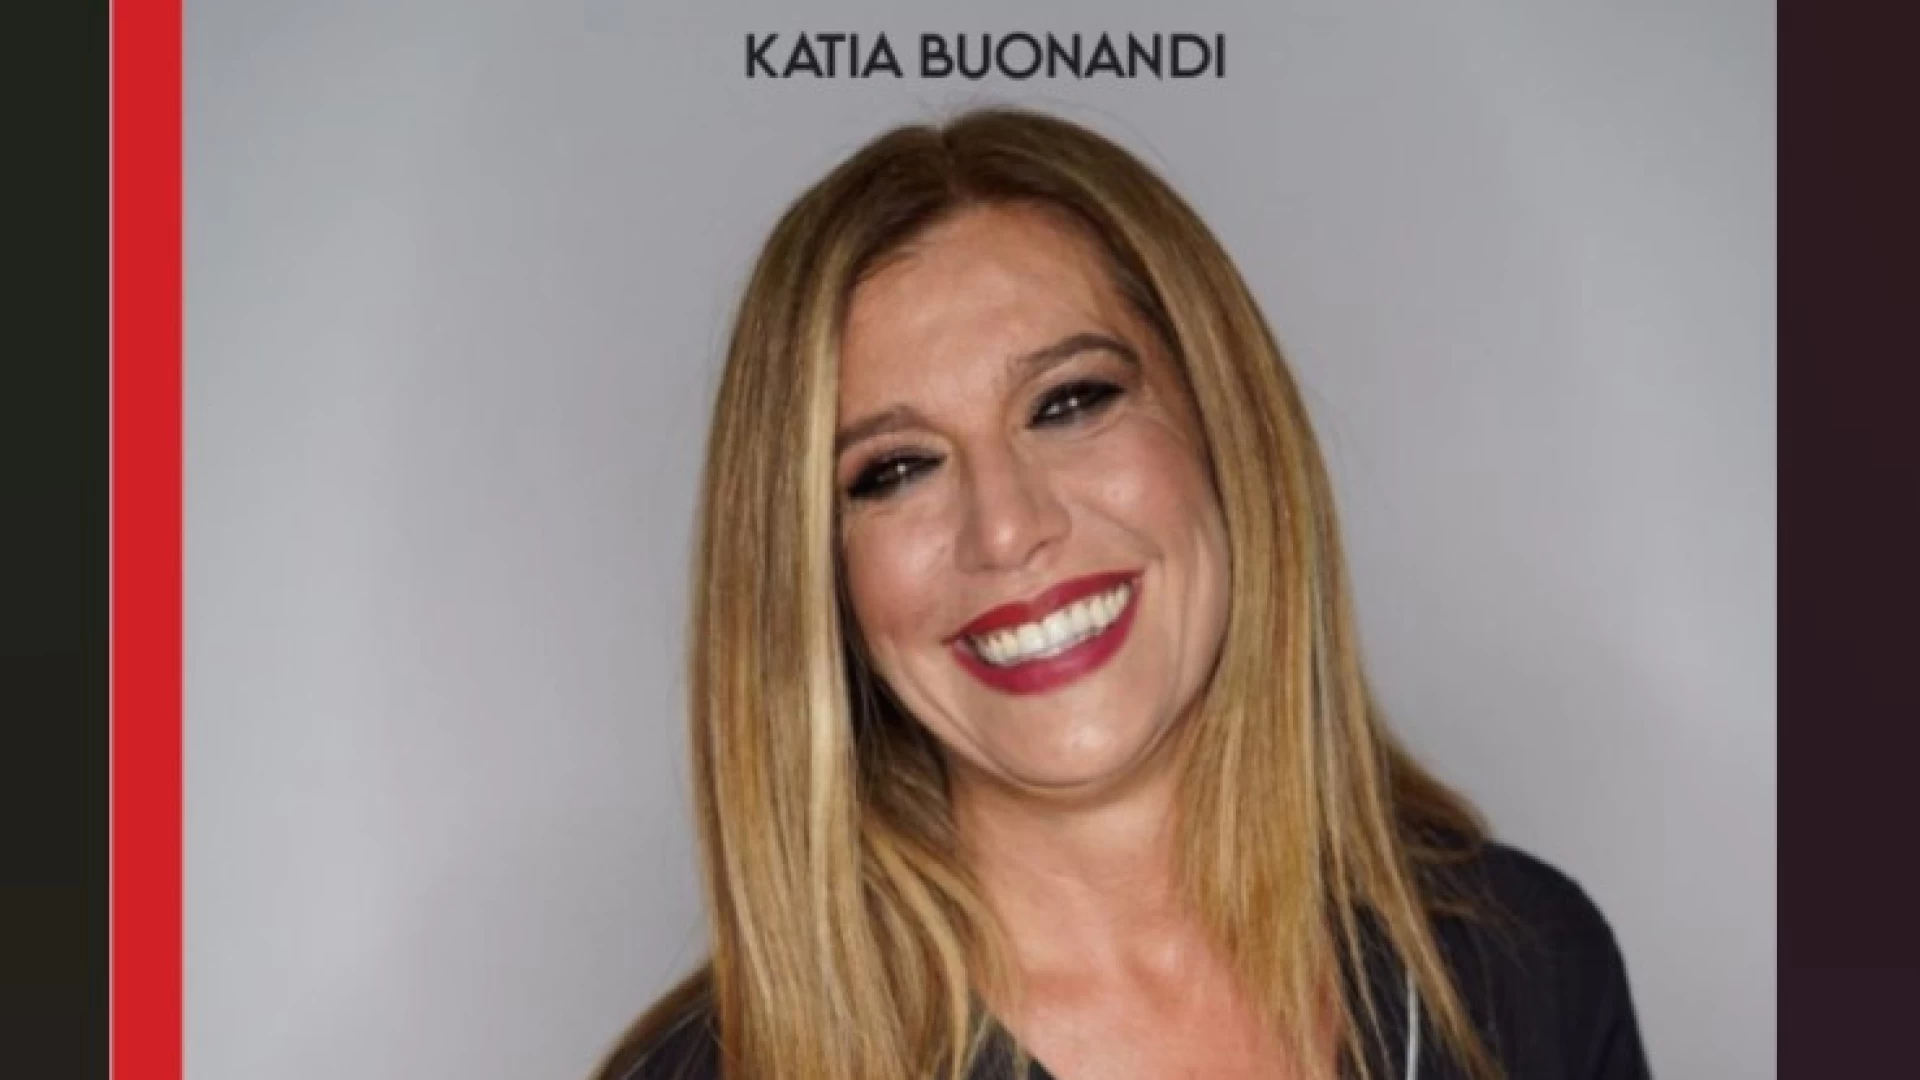 Katia Buonandi presenta il suo libro "I mille colori della Passione". La scrittrice orgogliosa di aver portato "la bellezza" a Castel Di Sangro.